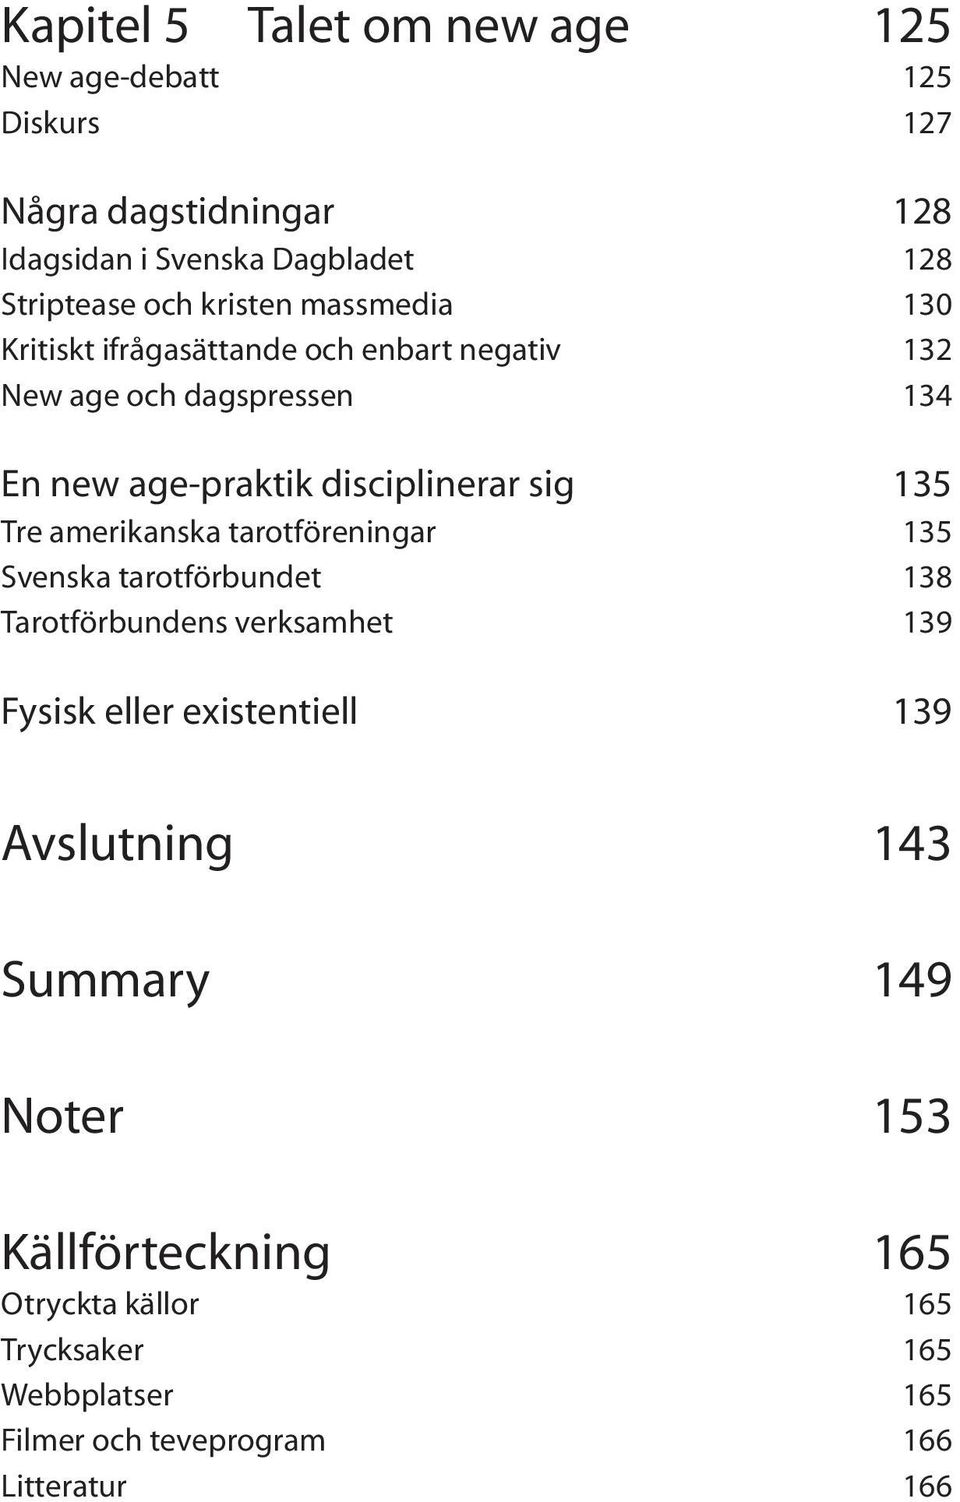 tarotföreningar 135 Svenska tarotförbundet 138 Tarotförbundens verksamhet 139 Fysisk eller existentiell 139 Avslutning 143 Summary 149 Noter 153